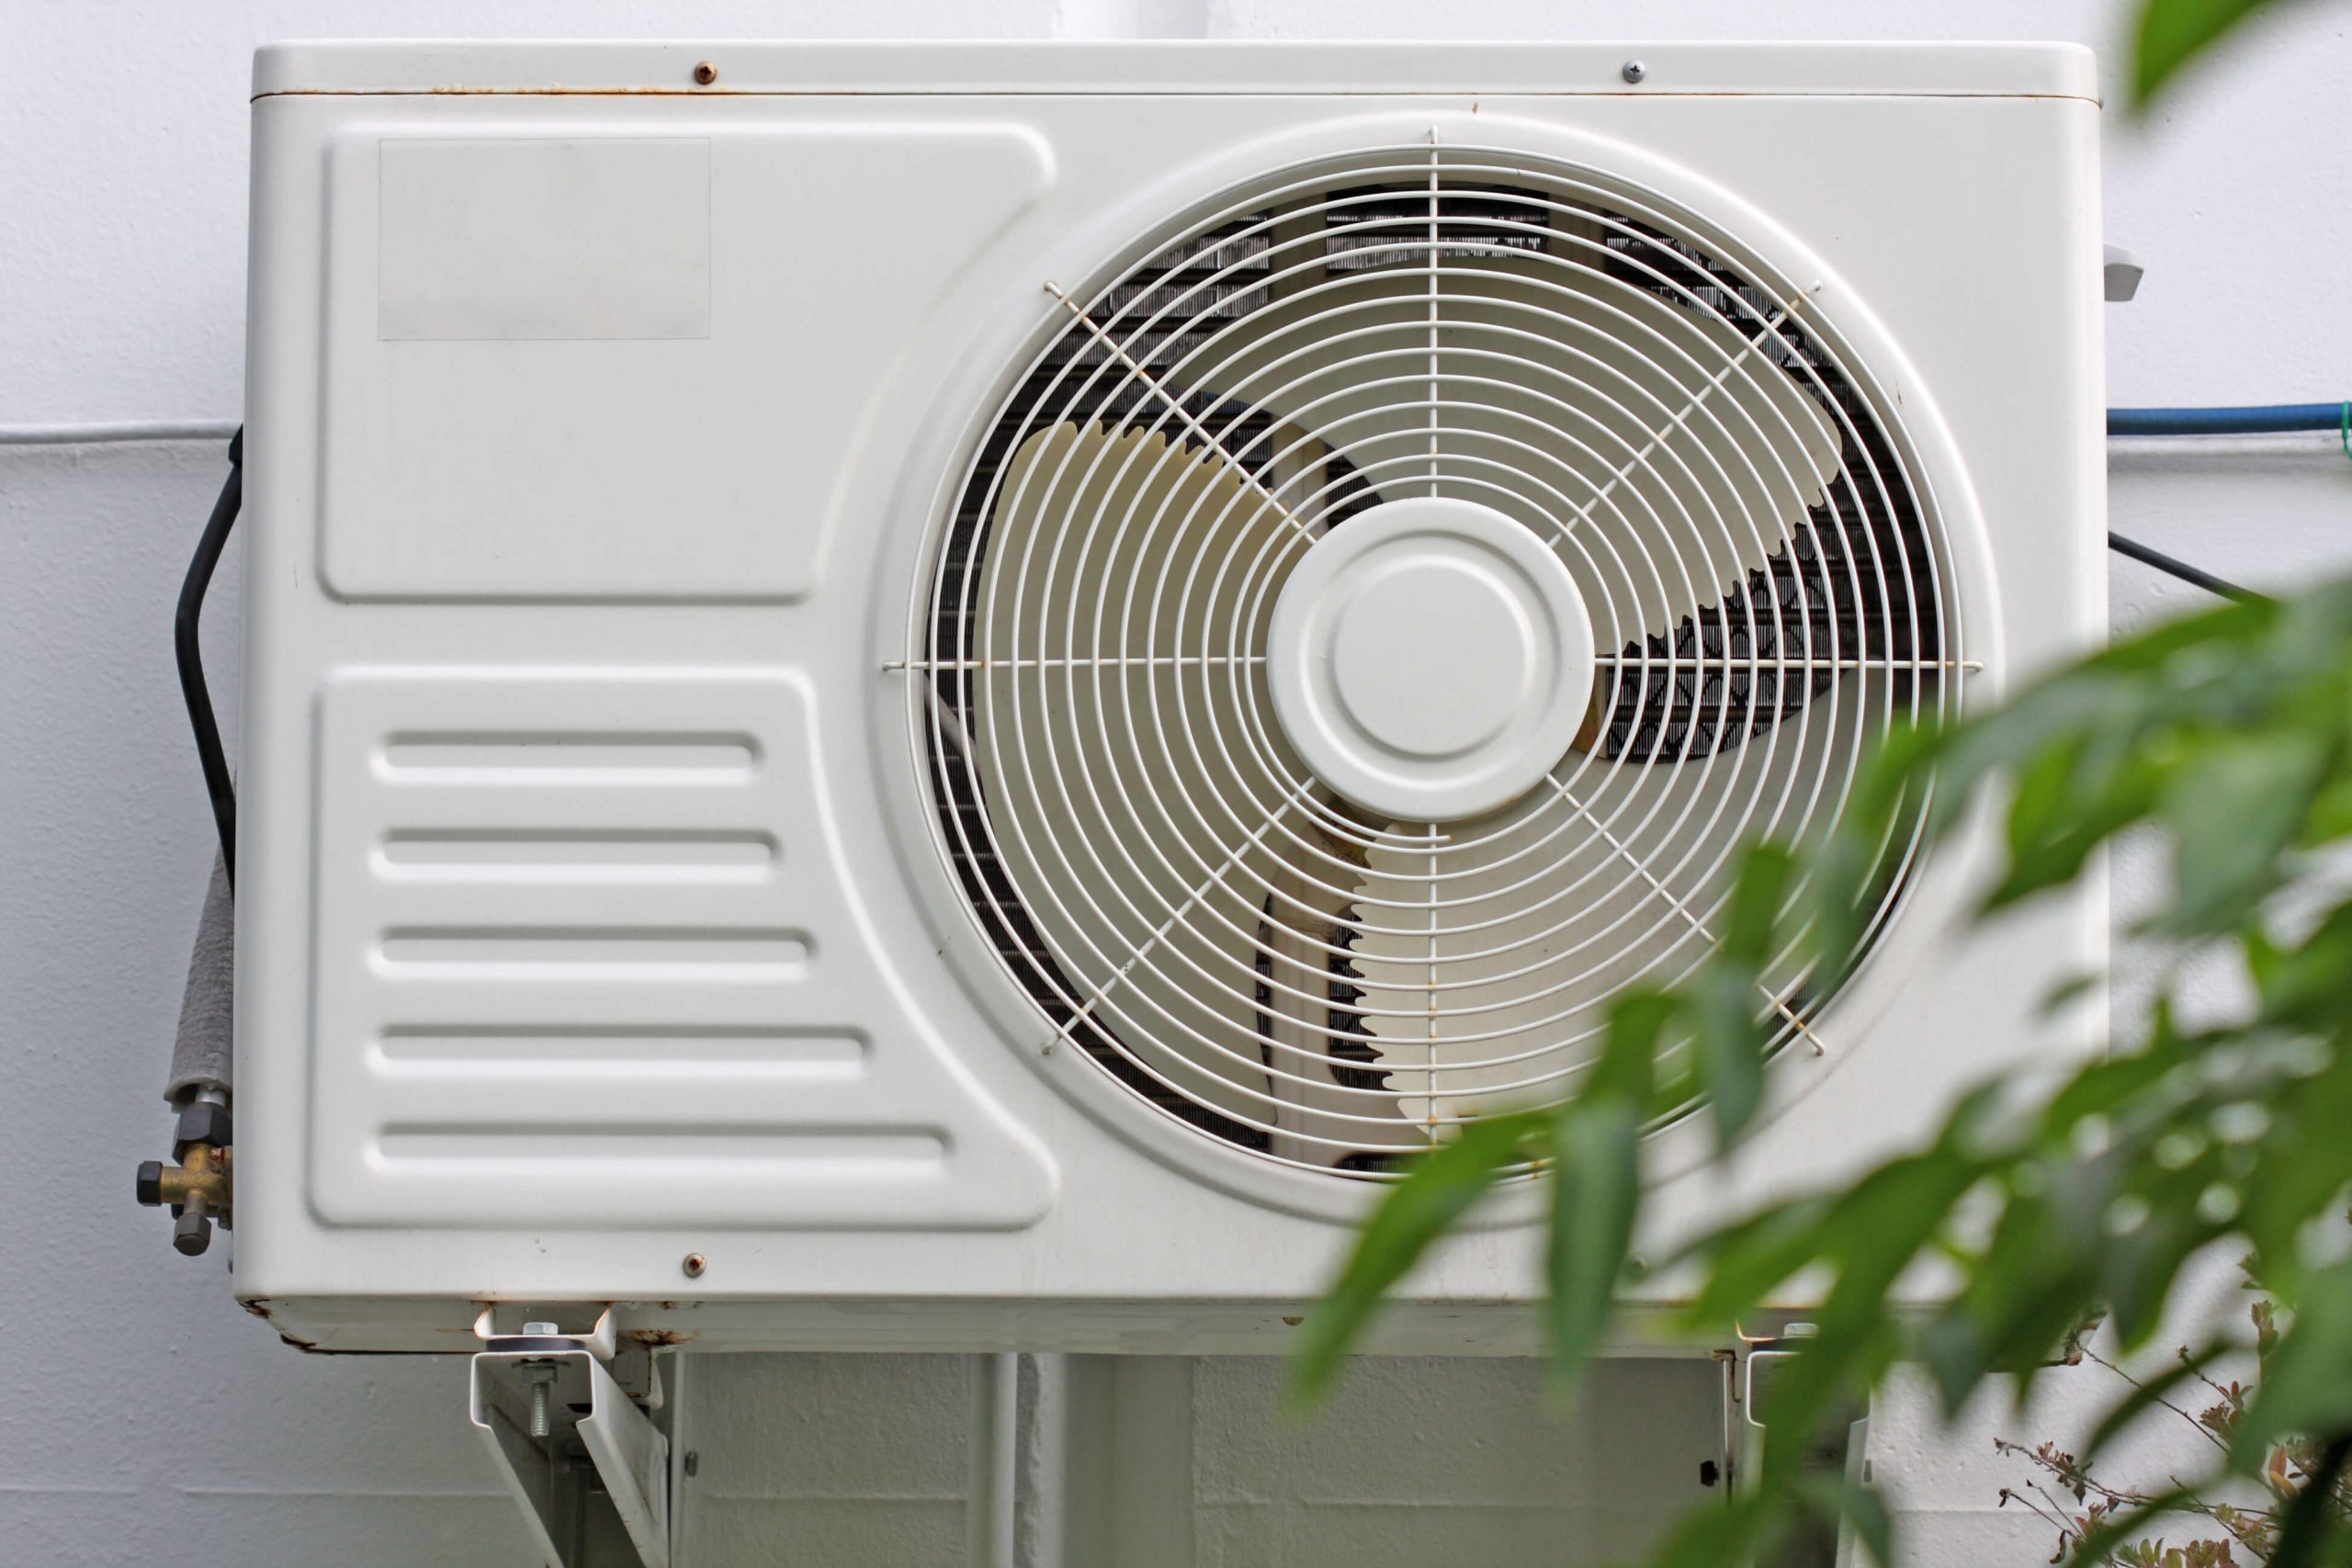 Ventilateur de climatiseur installer a l'exterieur